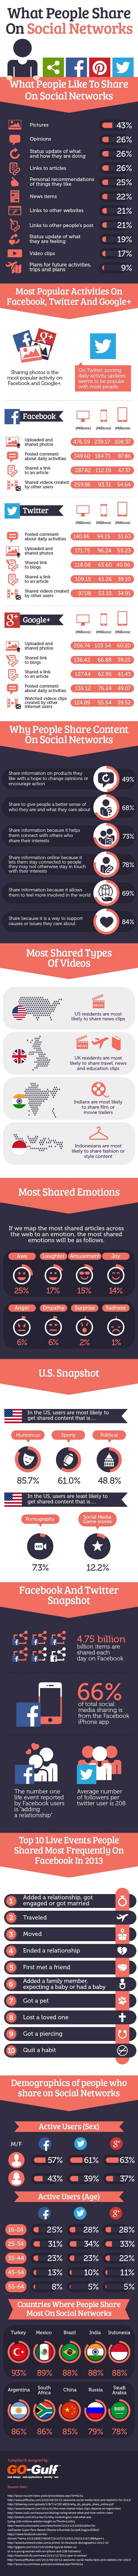 Qué motiva a los usuarios a compartir contenido #Infografía